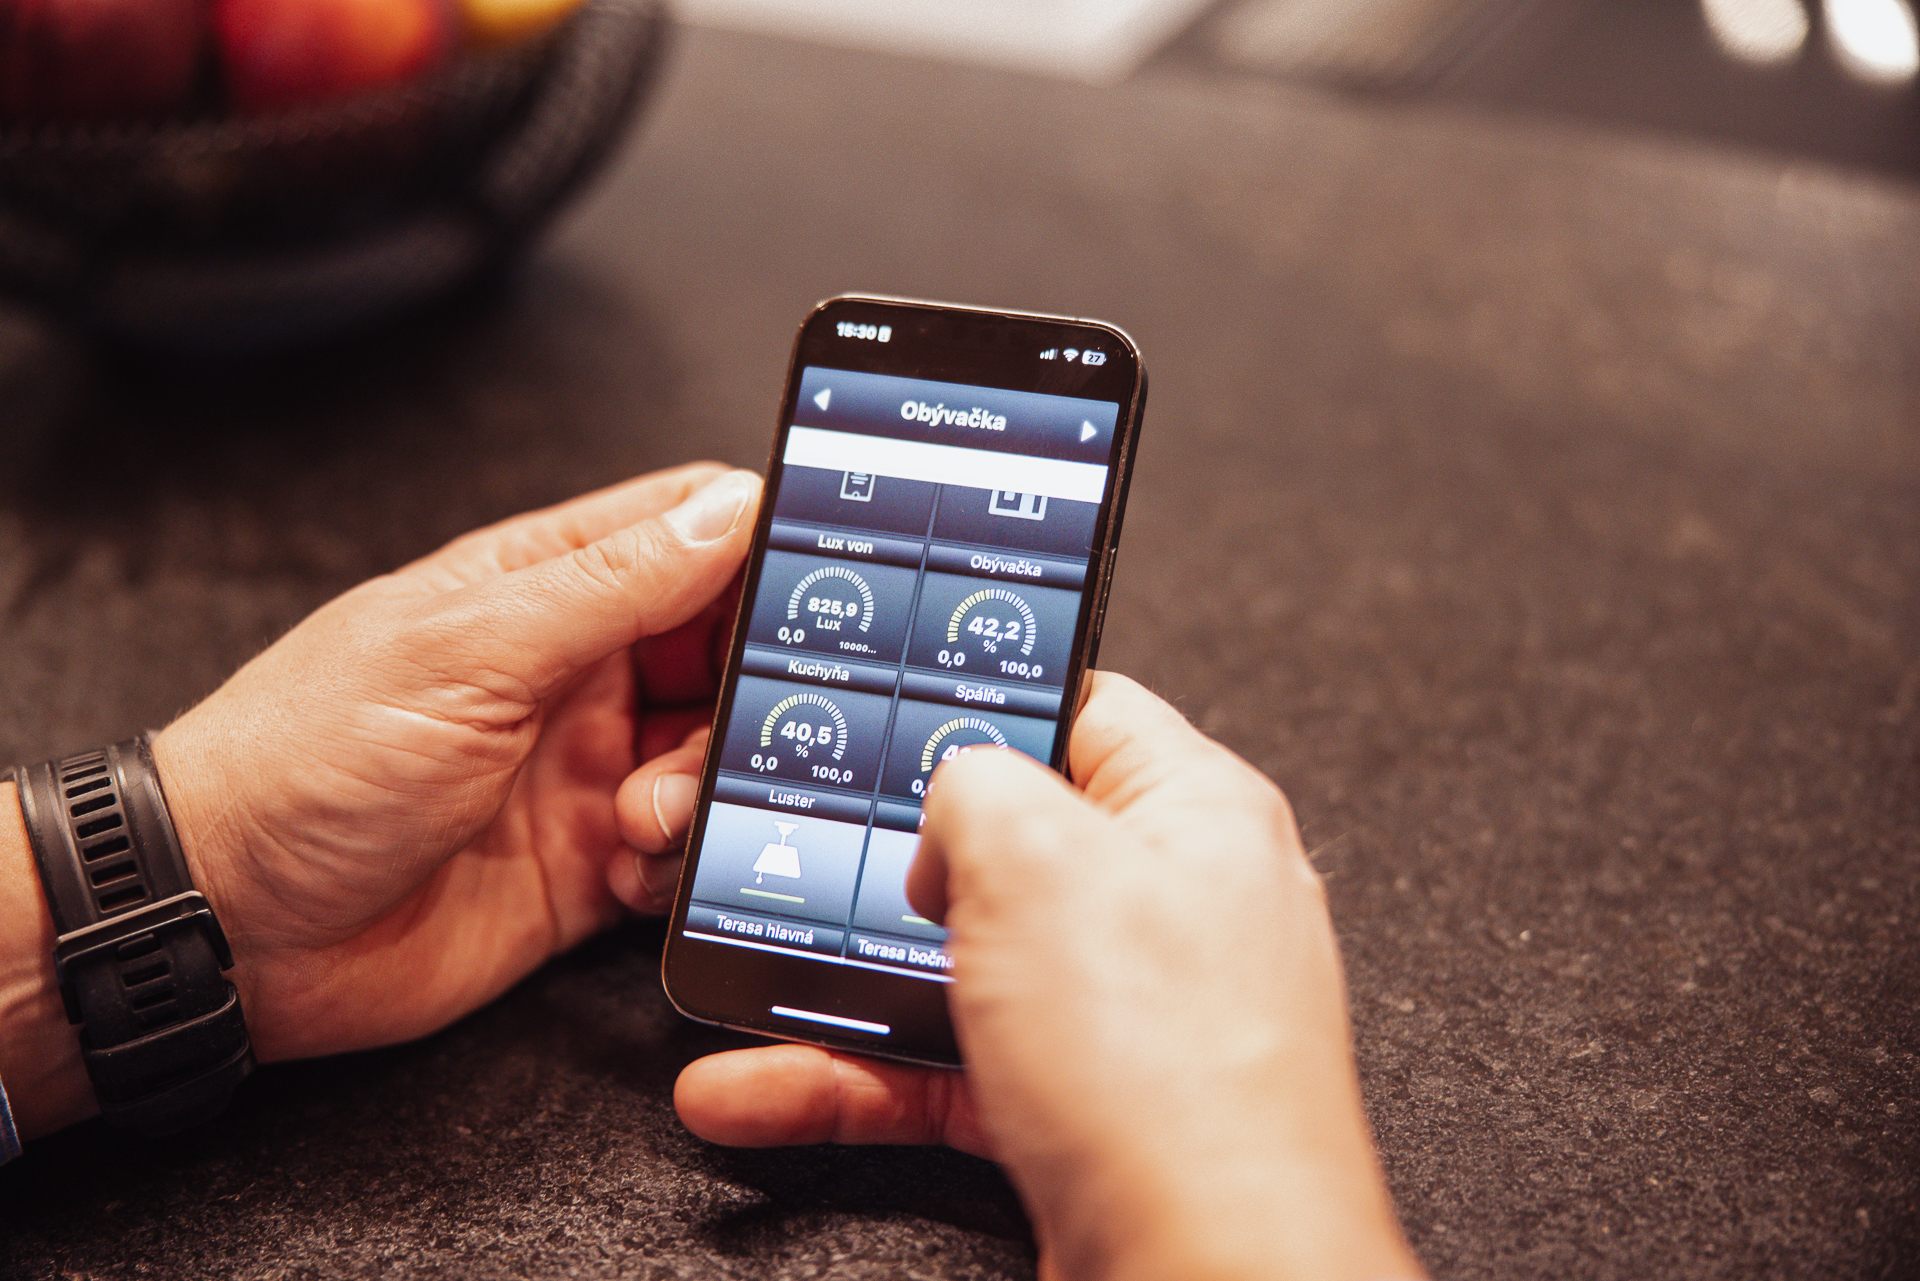 Mužské ruky držia iphone s aktívnou aplikáciou na ovládanie intelignetnej domácnosti s aktívnou obrazovkou s nastavením teploty a ukazovateľmi vlhkosti, svetelnosti a tlaku v miestnosti